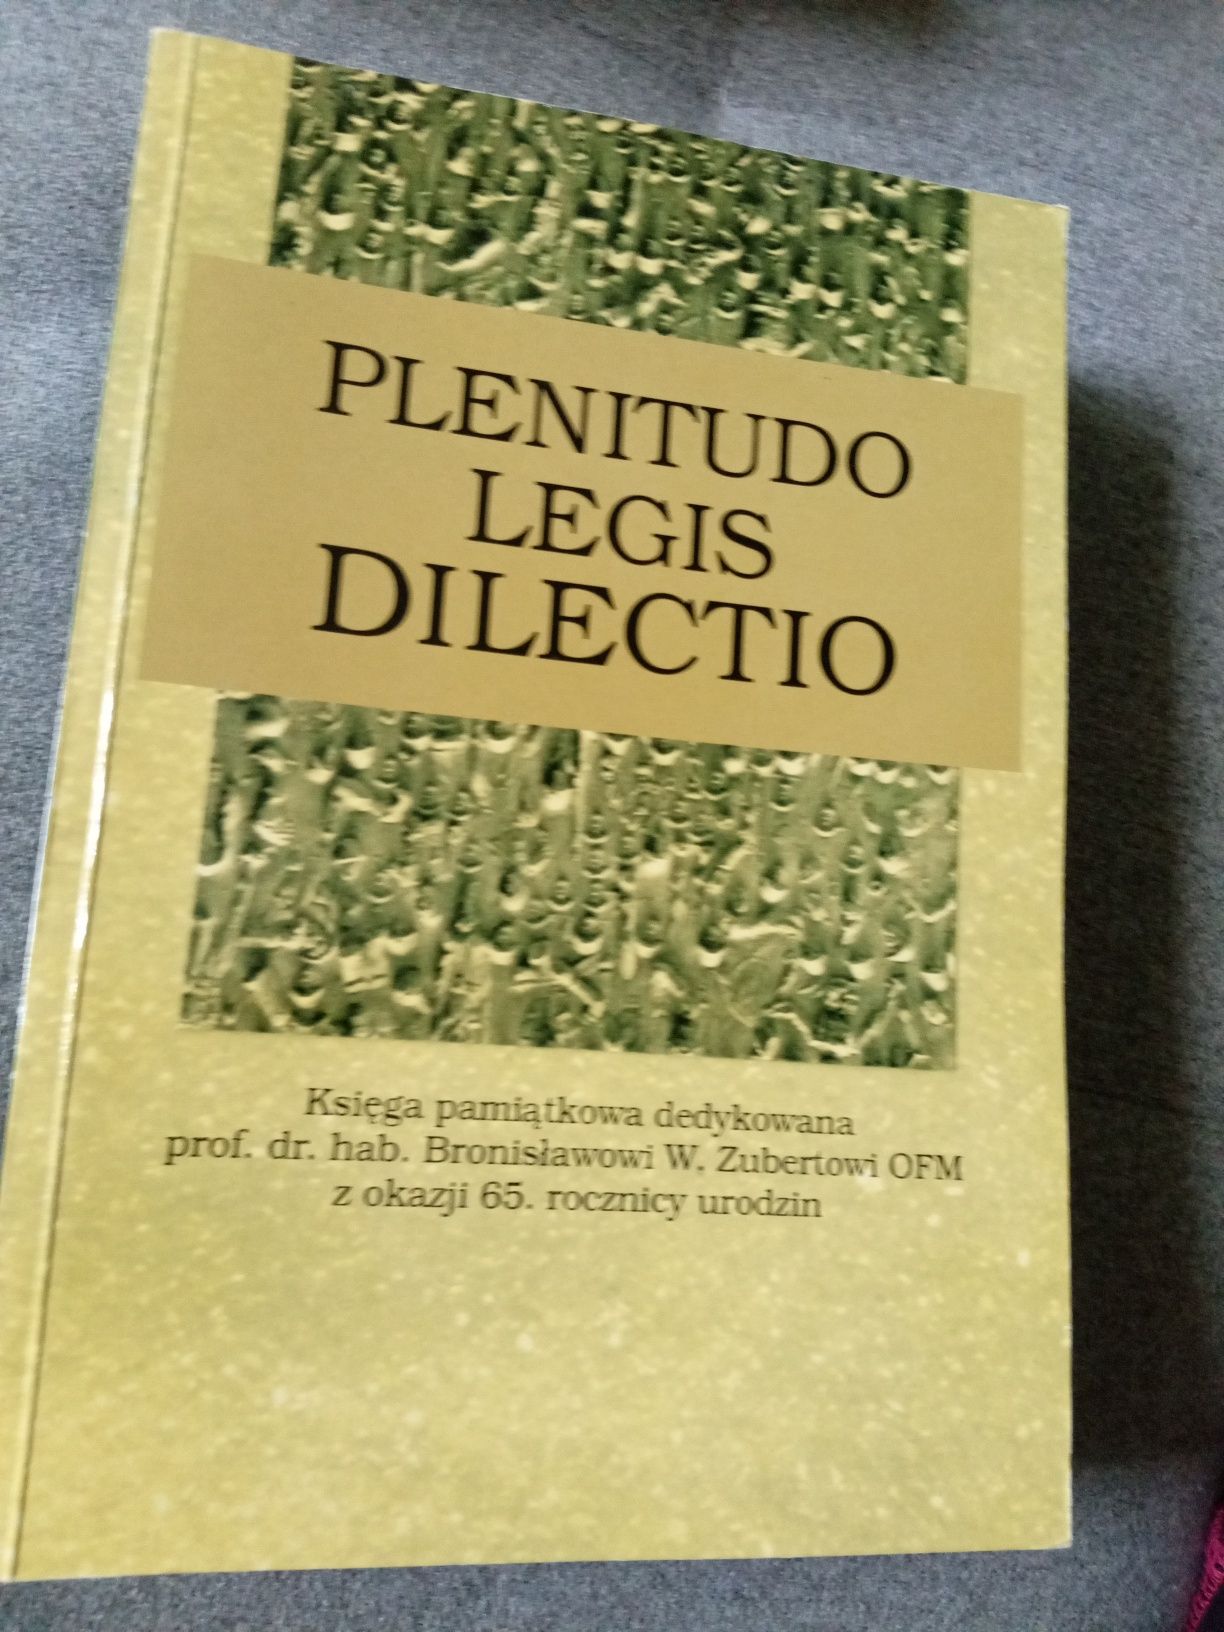 Plenitudo Legia dilectio kolekcja